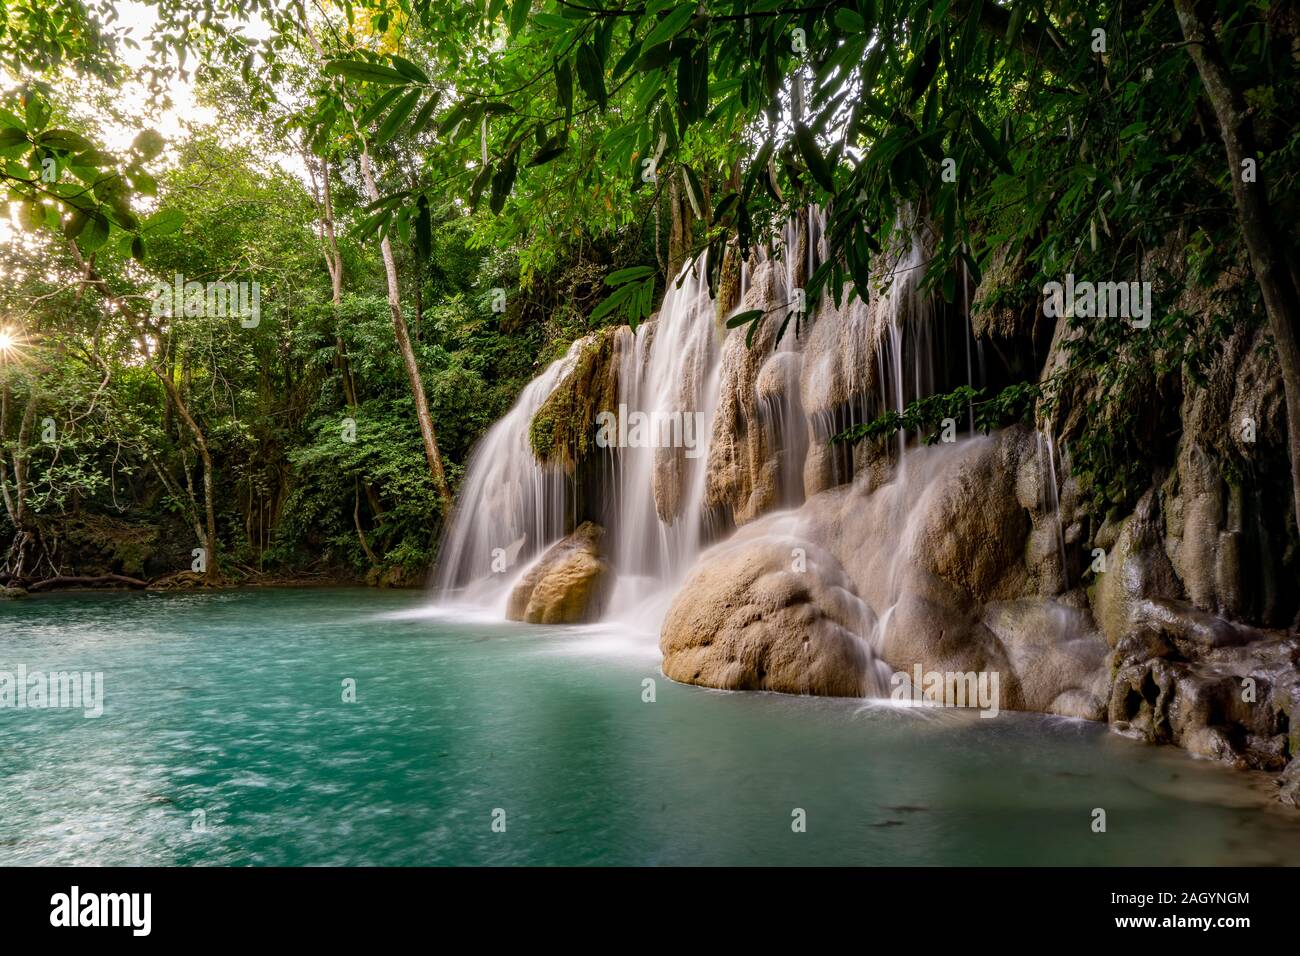 Clean Green Emerald Wasser vom Wasserfall durch kleine Bäume - große Bäume, Farbe Grün umgeben, Erawan Wasserfall, Provinz Kanchanaburi, Thailand Stockfoto